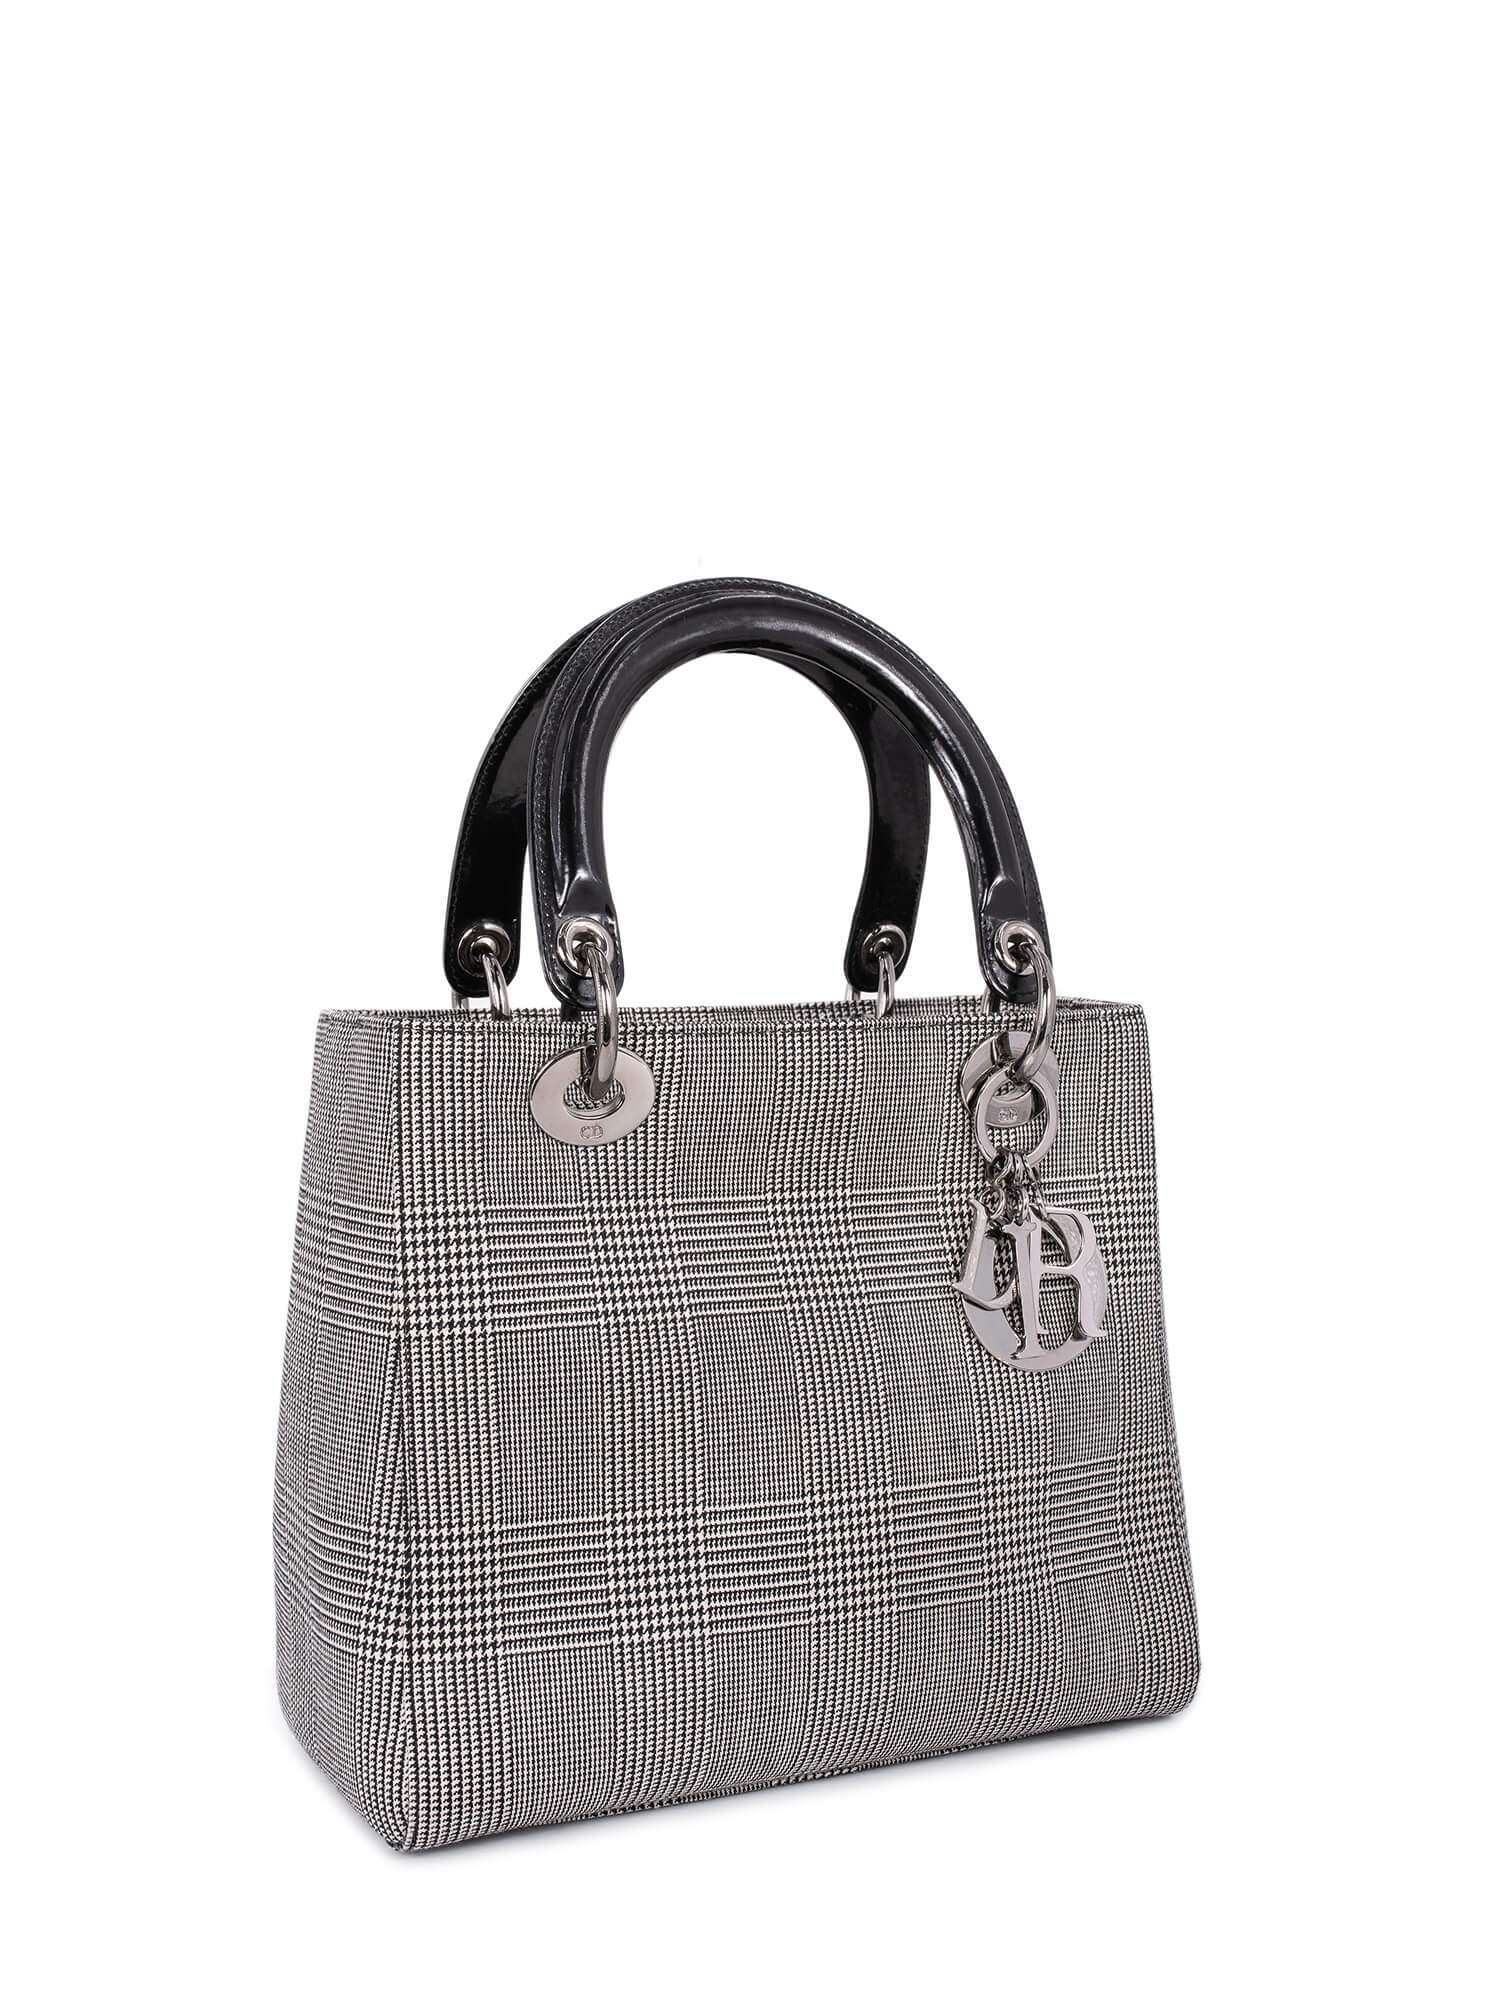 Christian Dior Houndstooth Lady Dior Bag Black White-designer resale